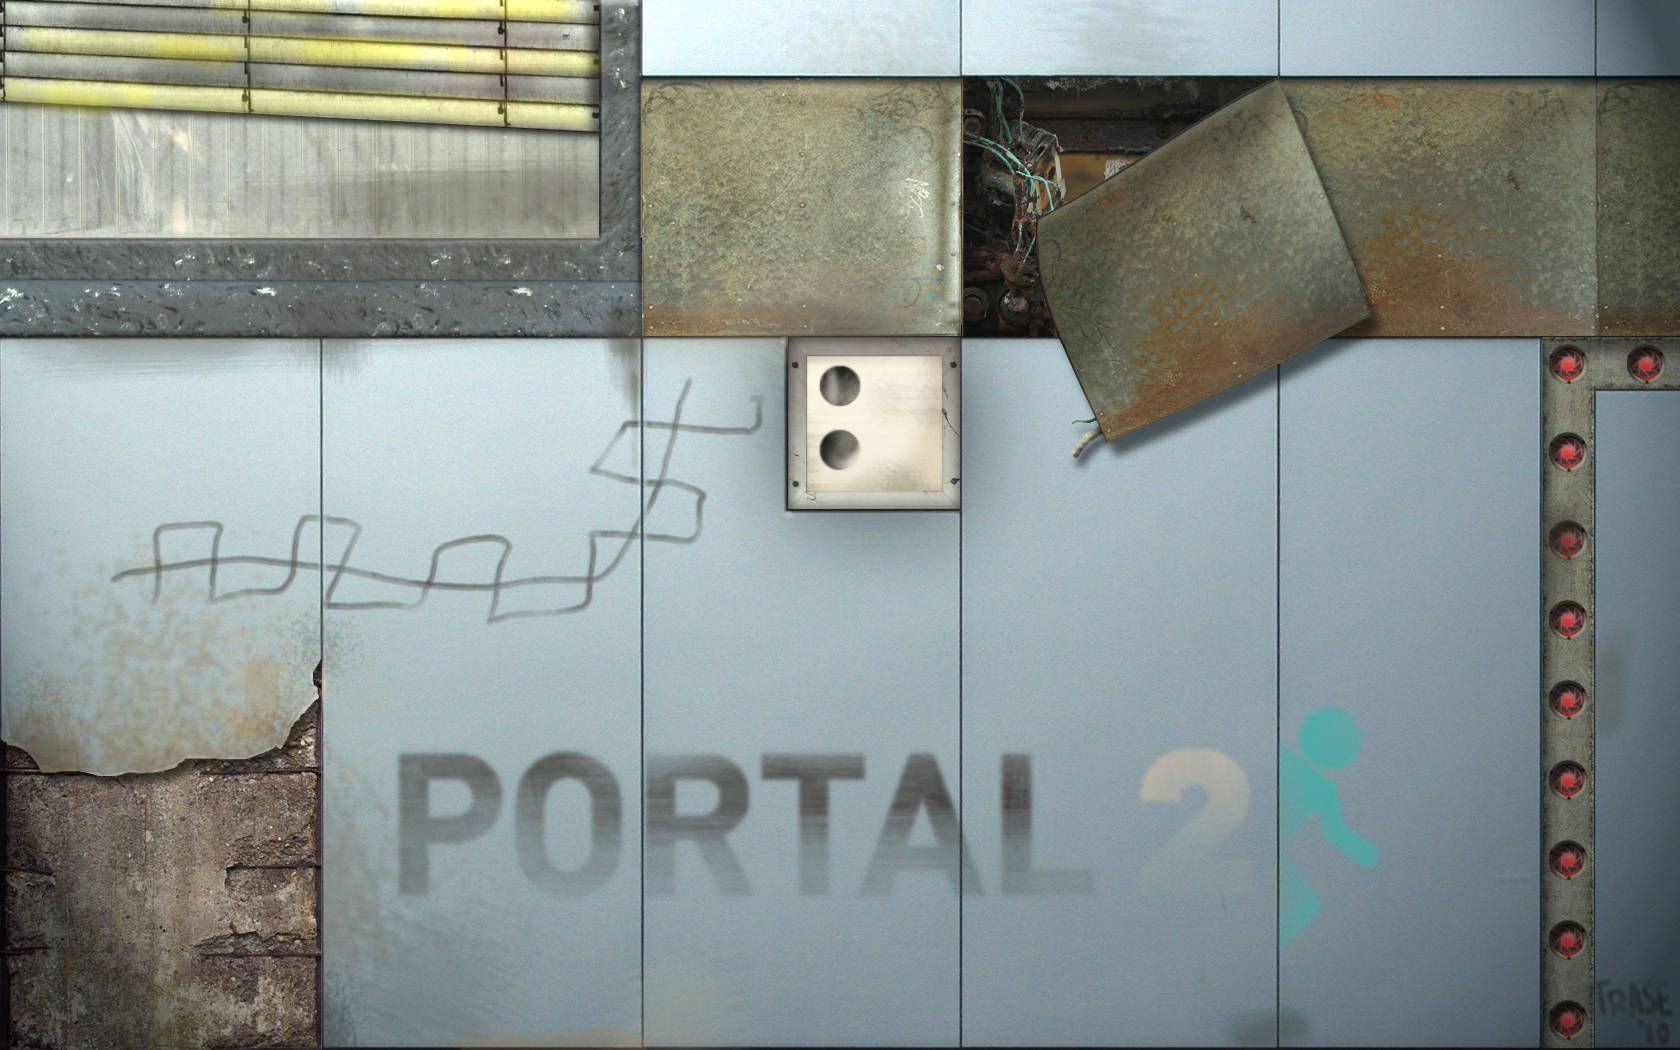 Entschlüssledie Rätsel Von Portal 2 Auf Zwei Bildschirmen! Wallpaper